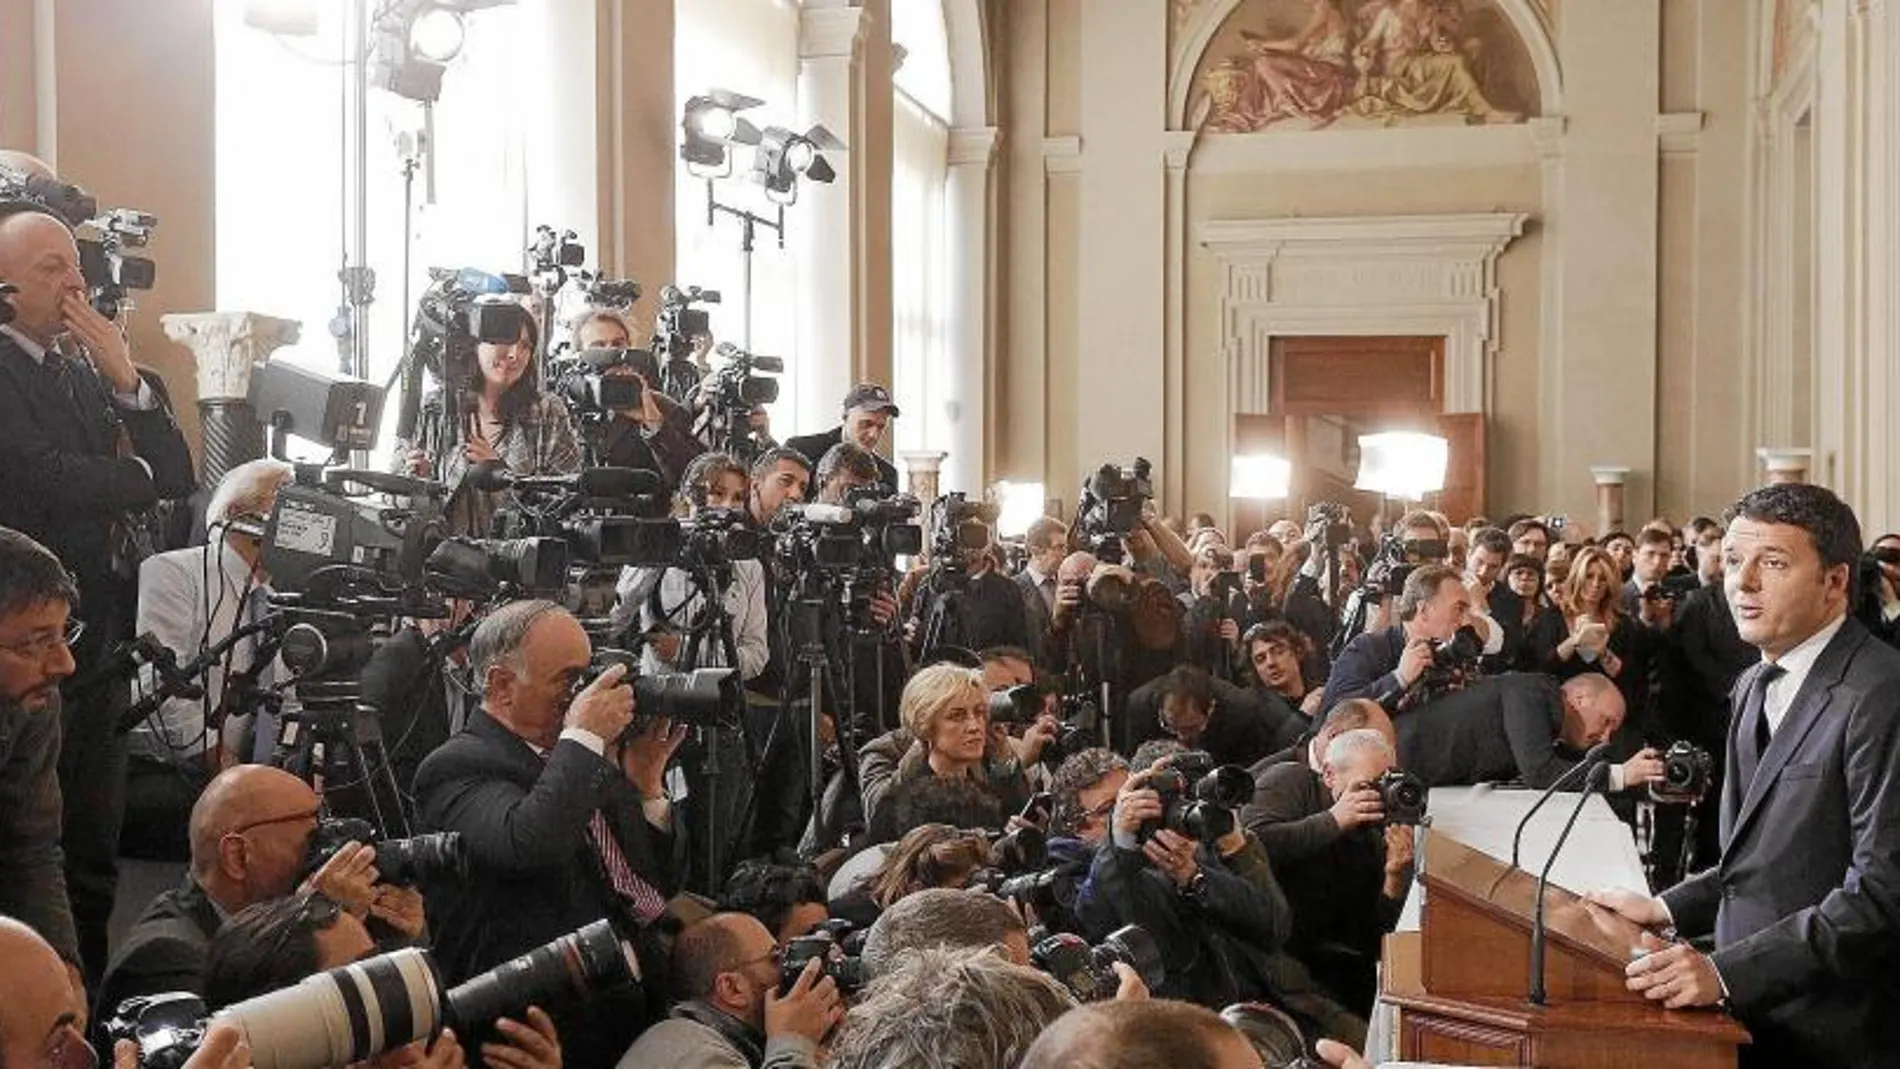 EXPECTACIÓN. Numerosos periodistas se concentraron en el Palacio del Quirinal para escuchar a Matteo Renzi